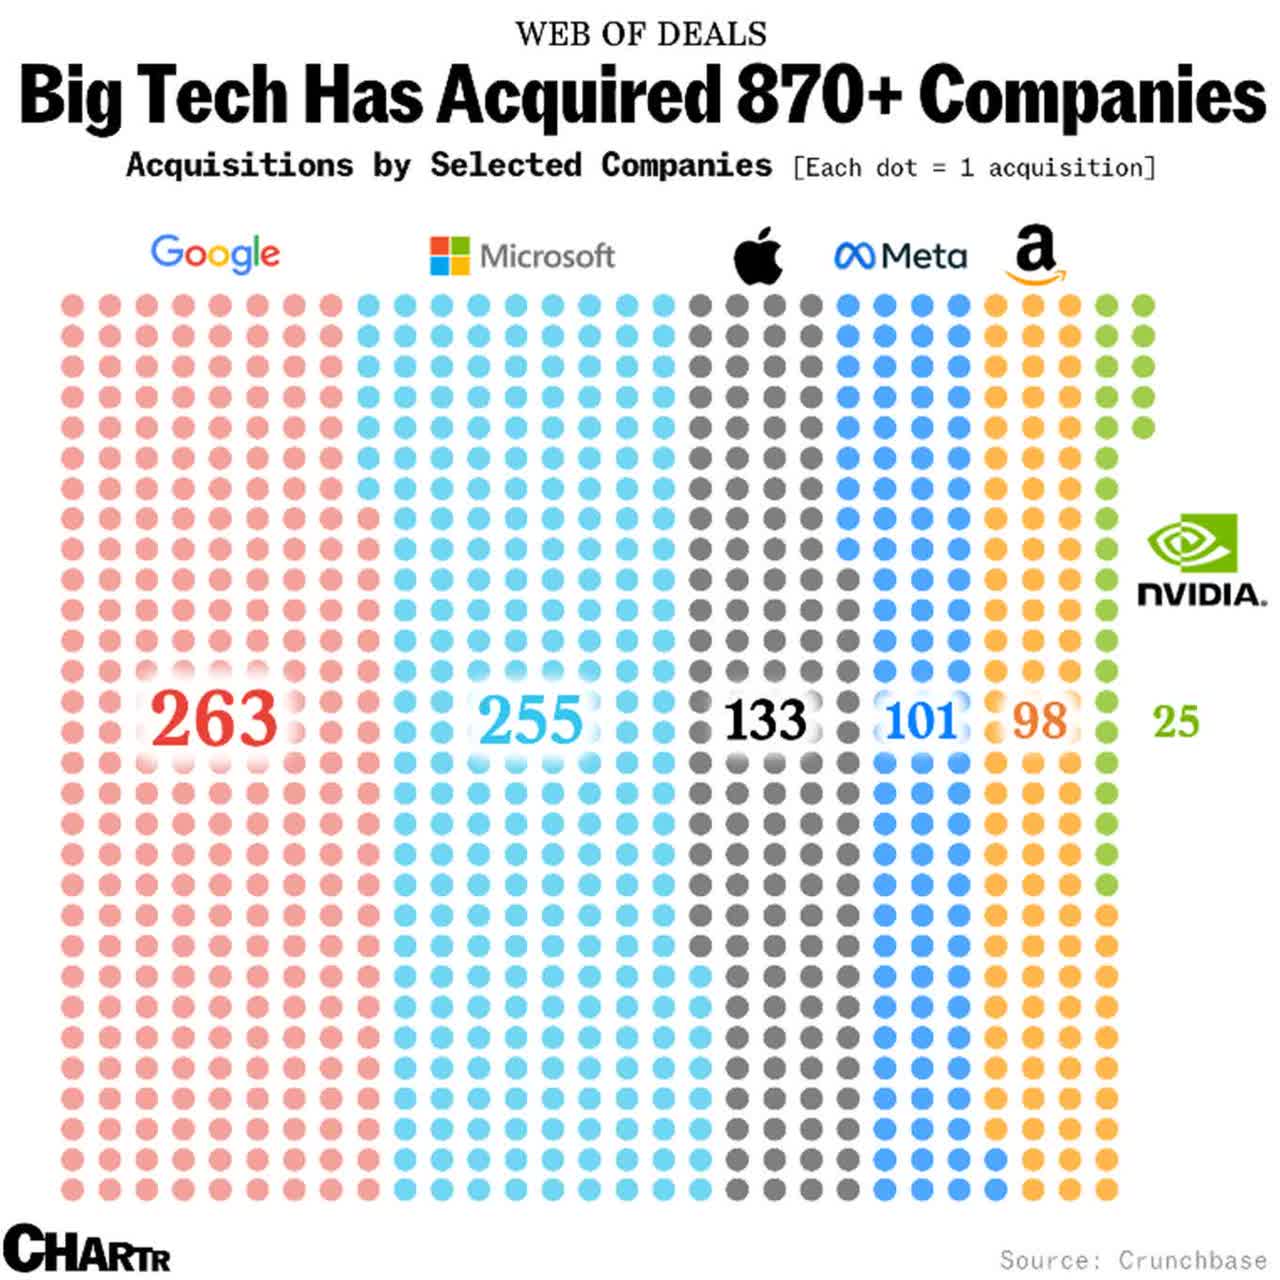 Big Tech acquisitions